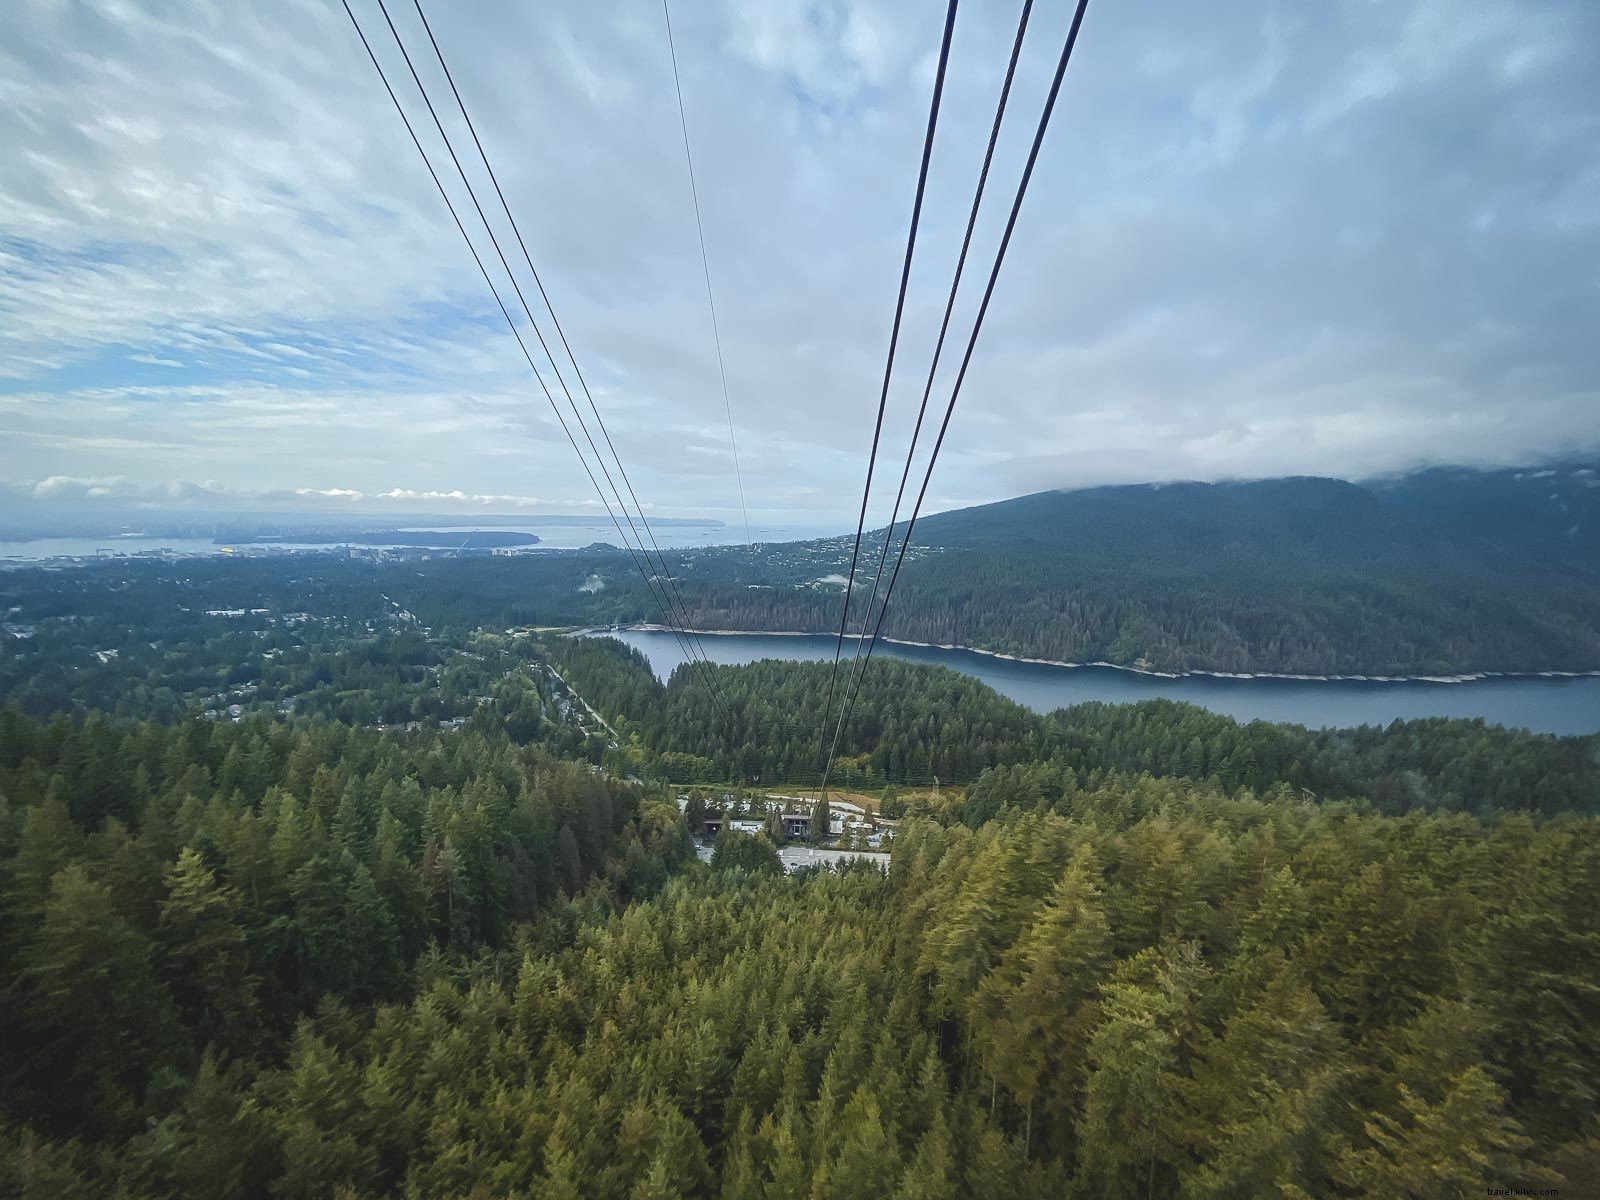 Miglior viaggio su strada della Columbia Britannica – Vancouver – Kelowna – Revelstoke